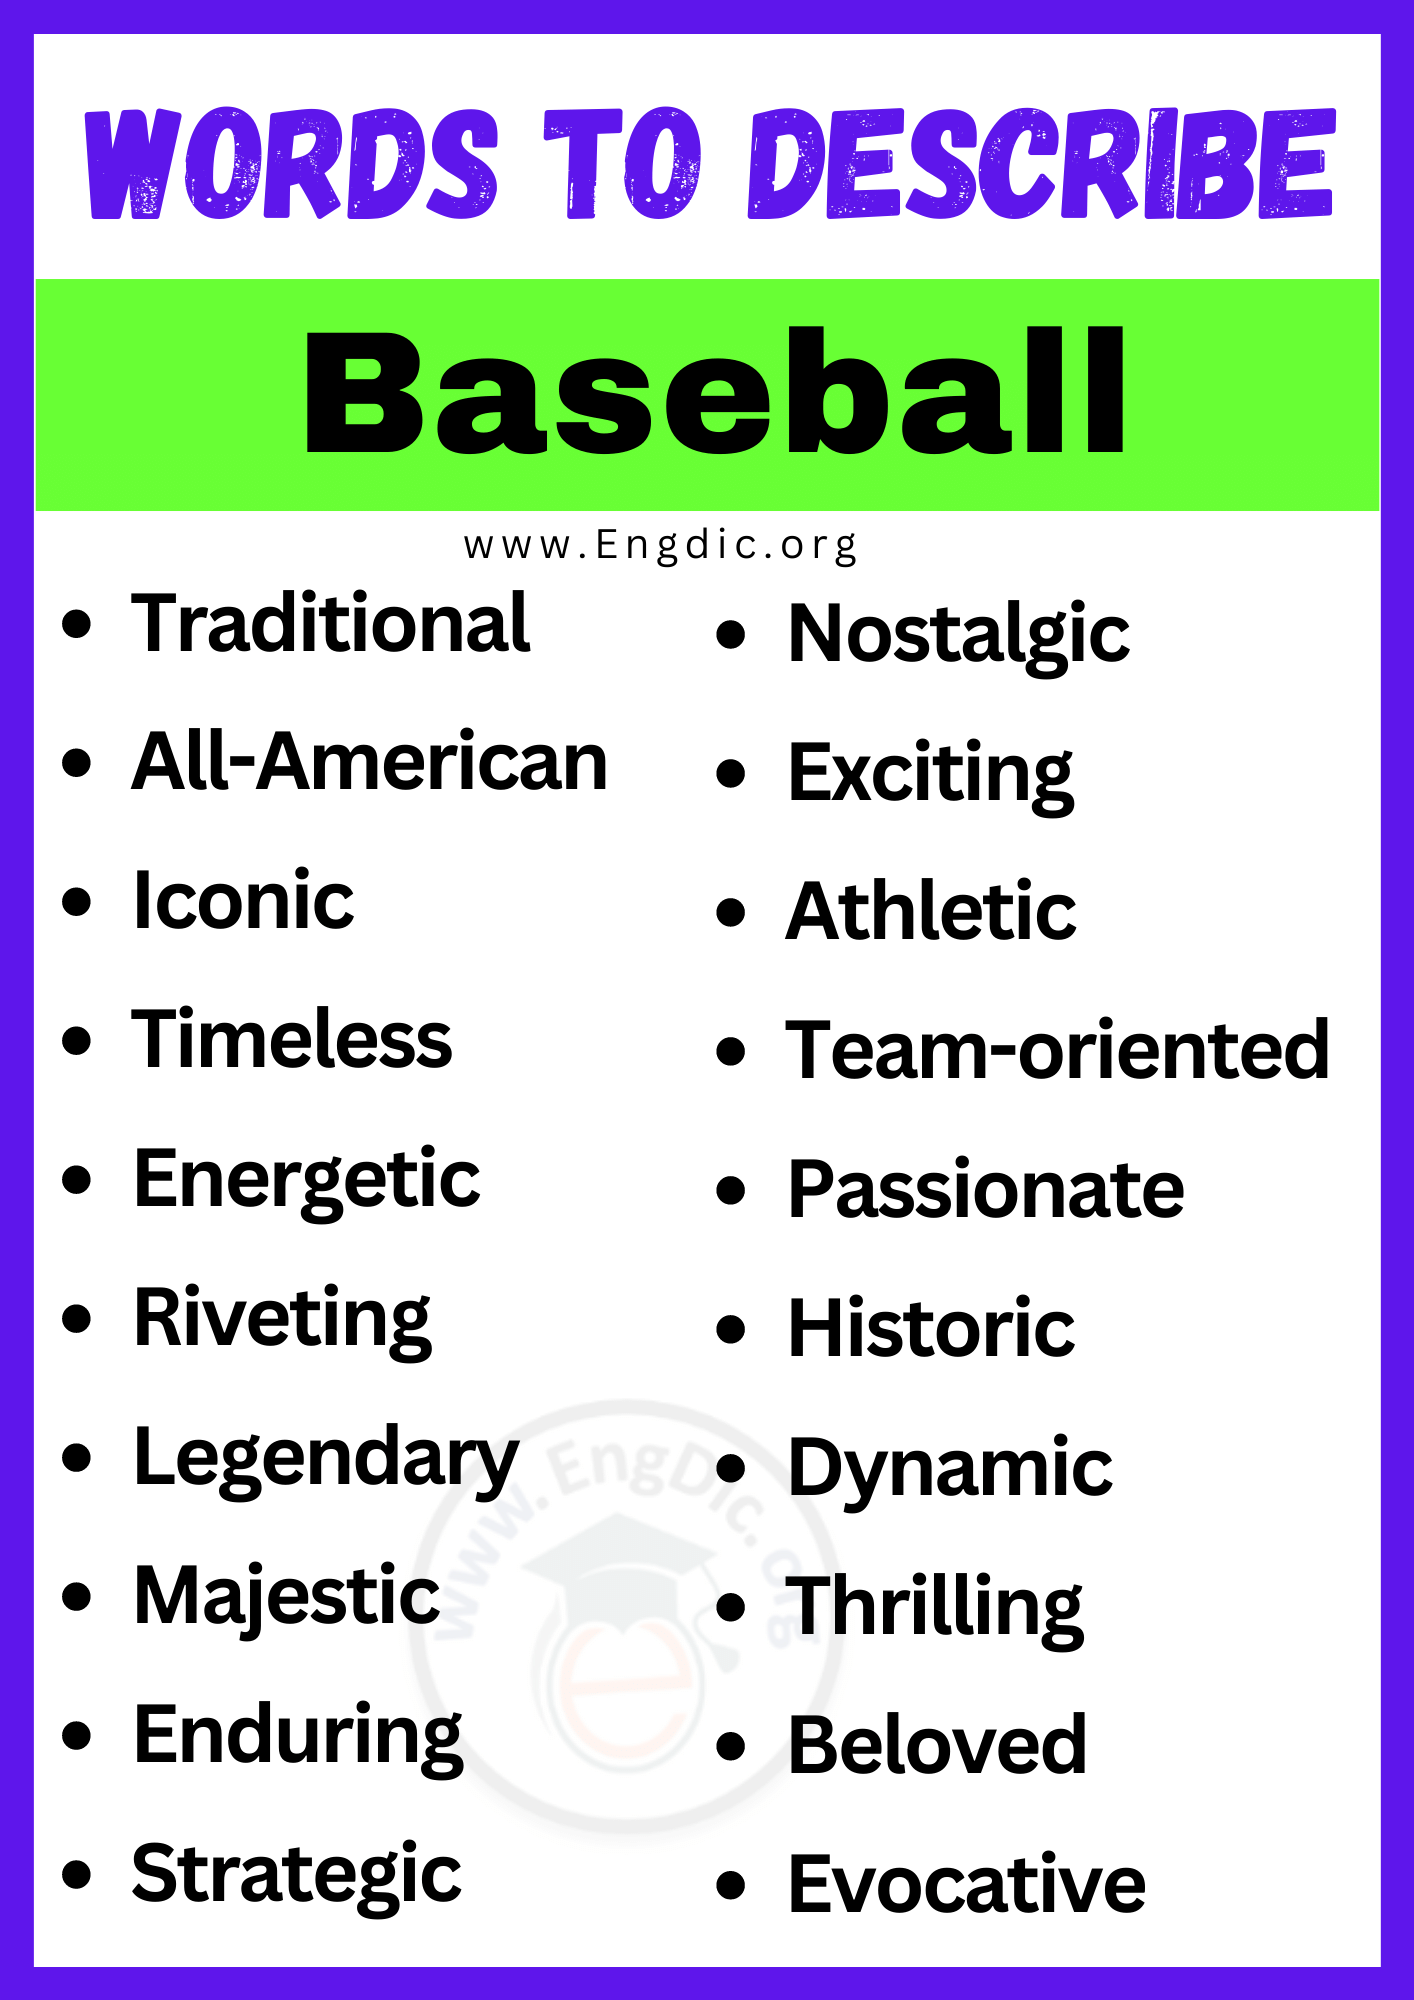 Words to Describe Baseball